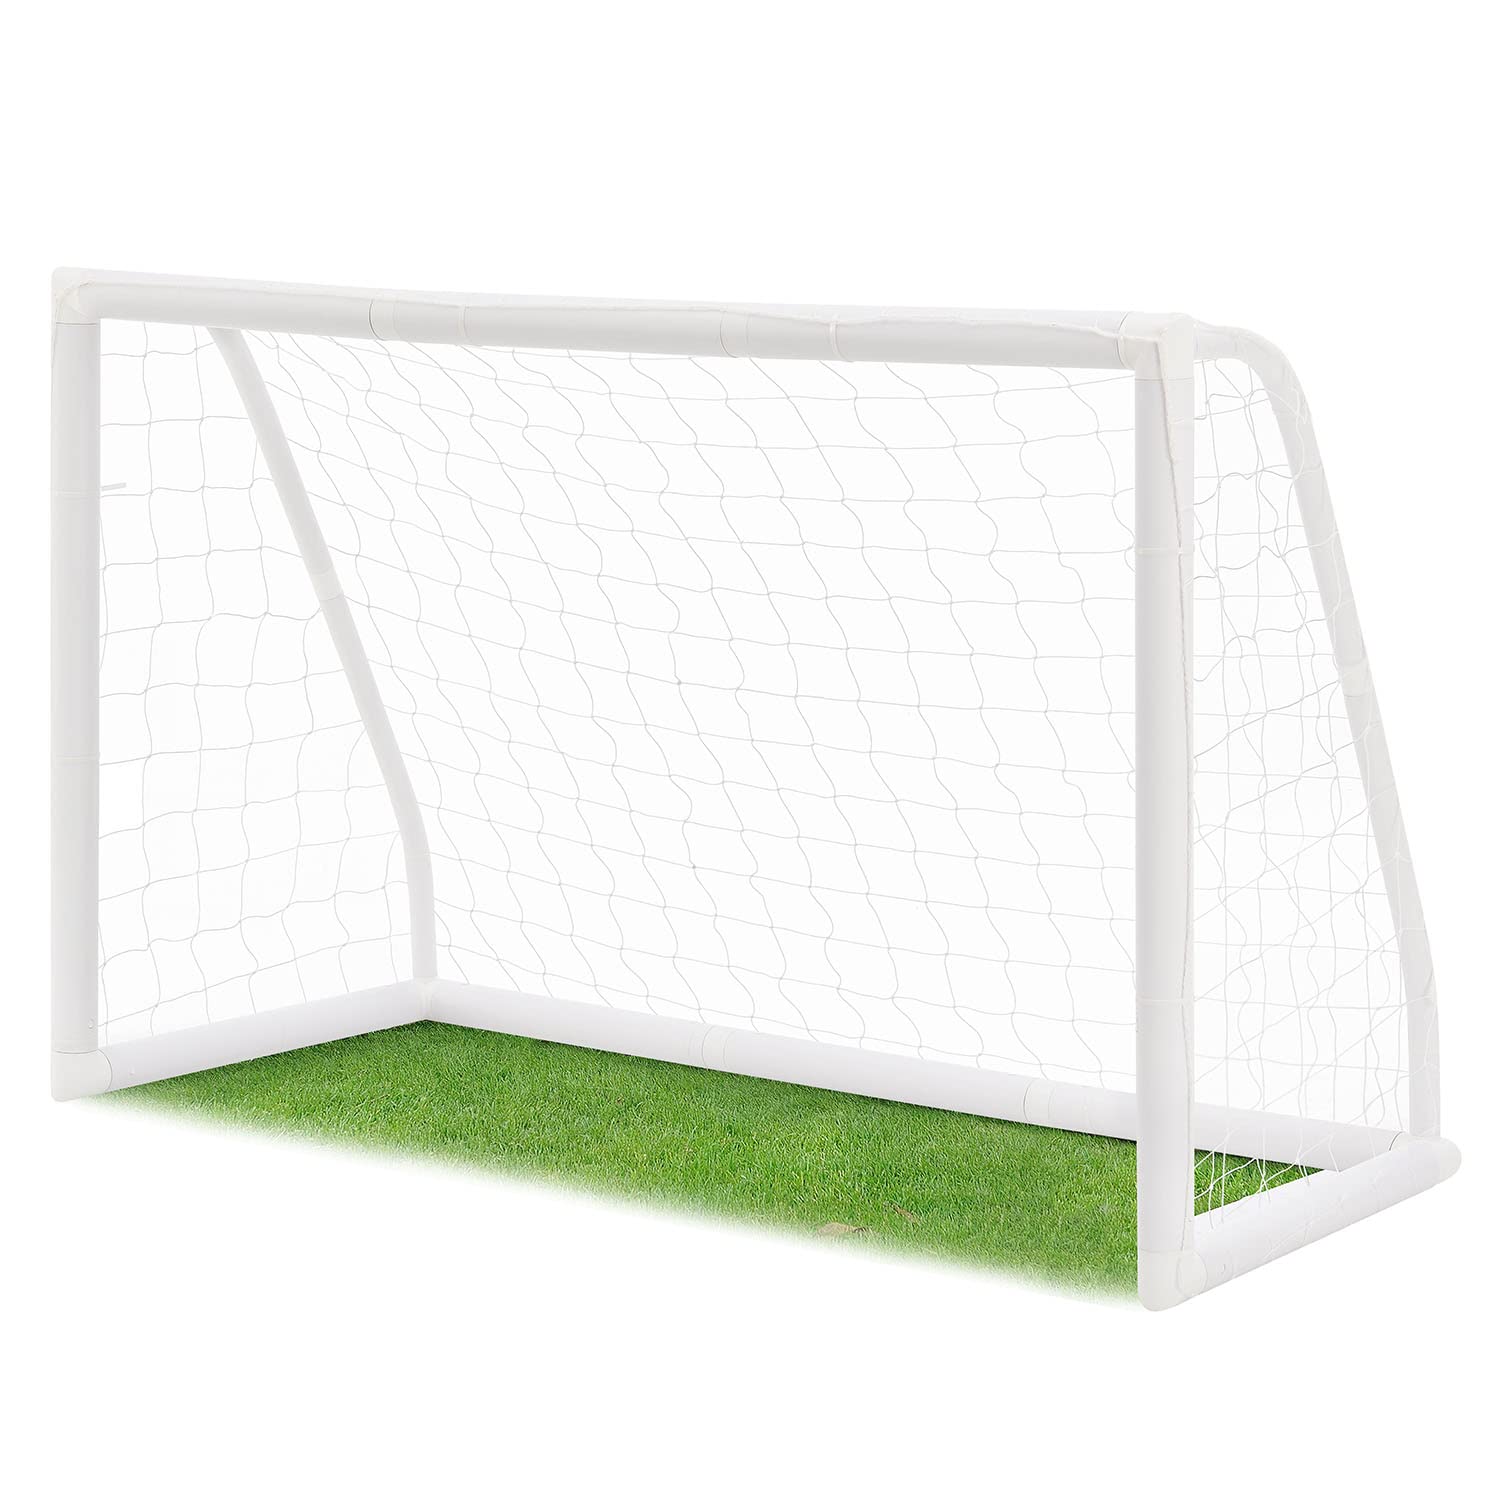 ArtSport Fußballtor 180 x 120 cm - Mini Fussballtor mit Klicksystem für Garten in Weiß - Stabiles Fußball Tor klein inklusive Netz & Tragetasche